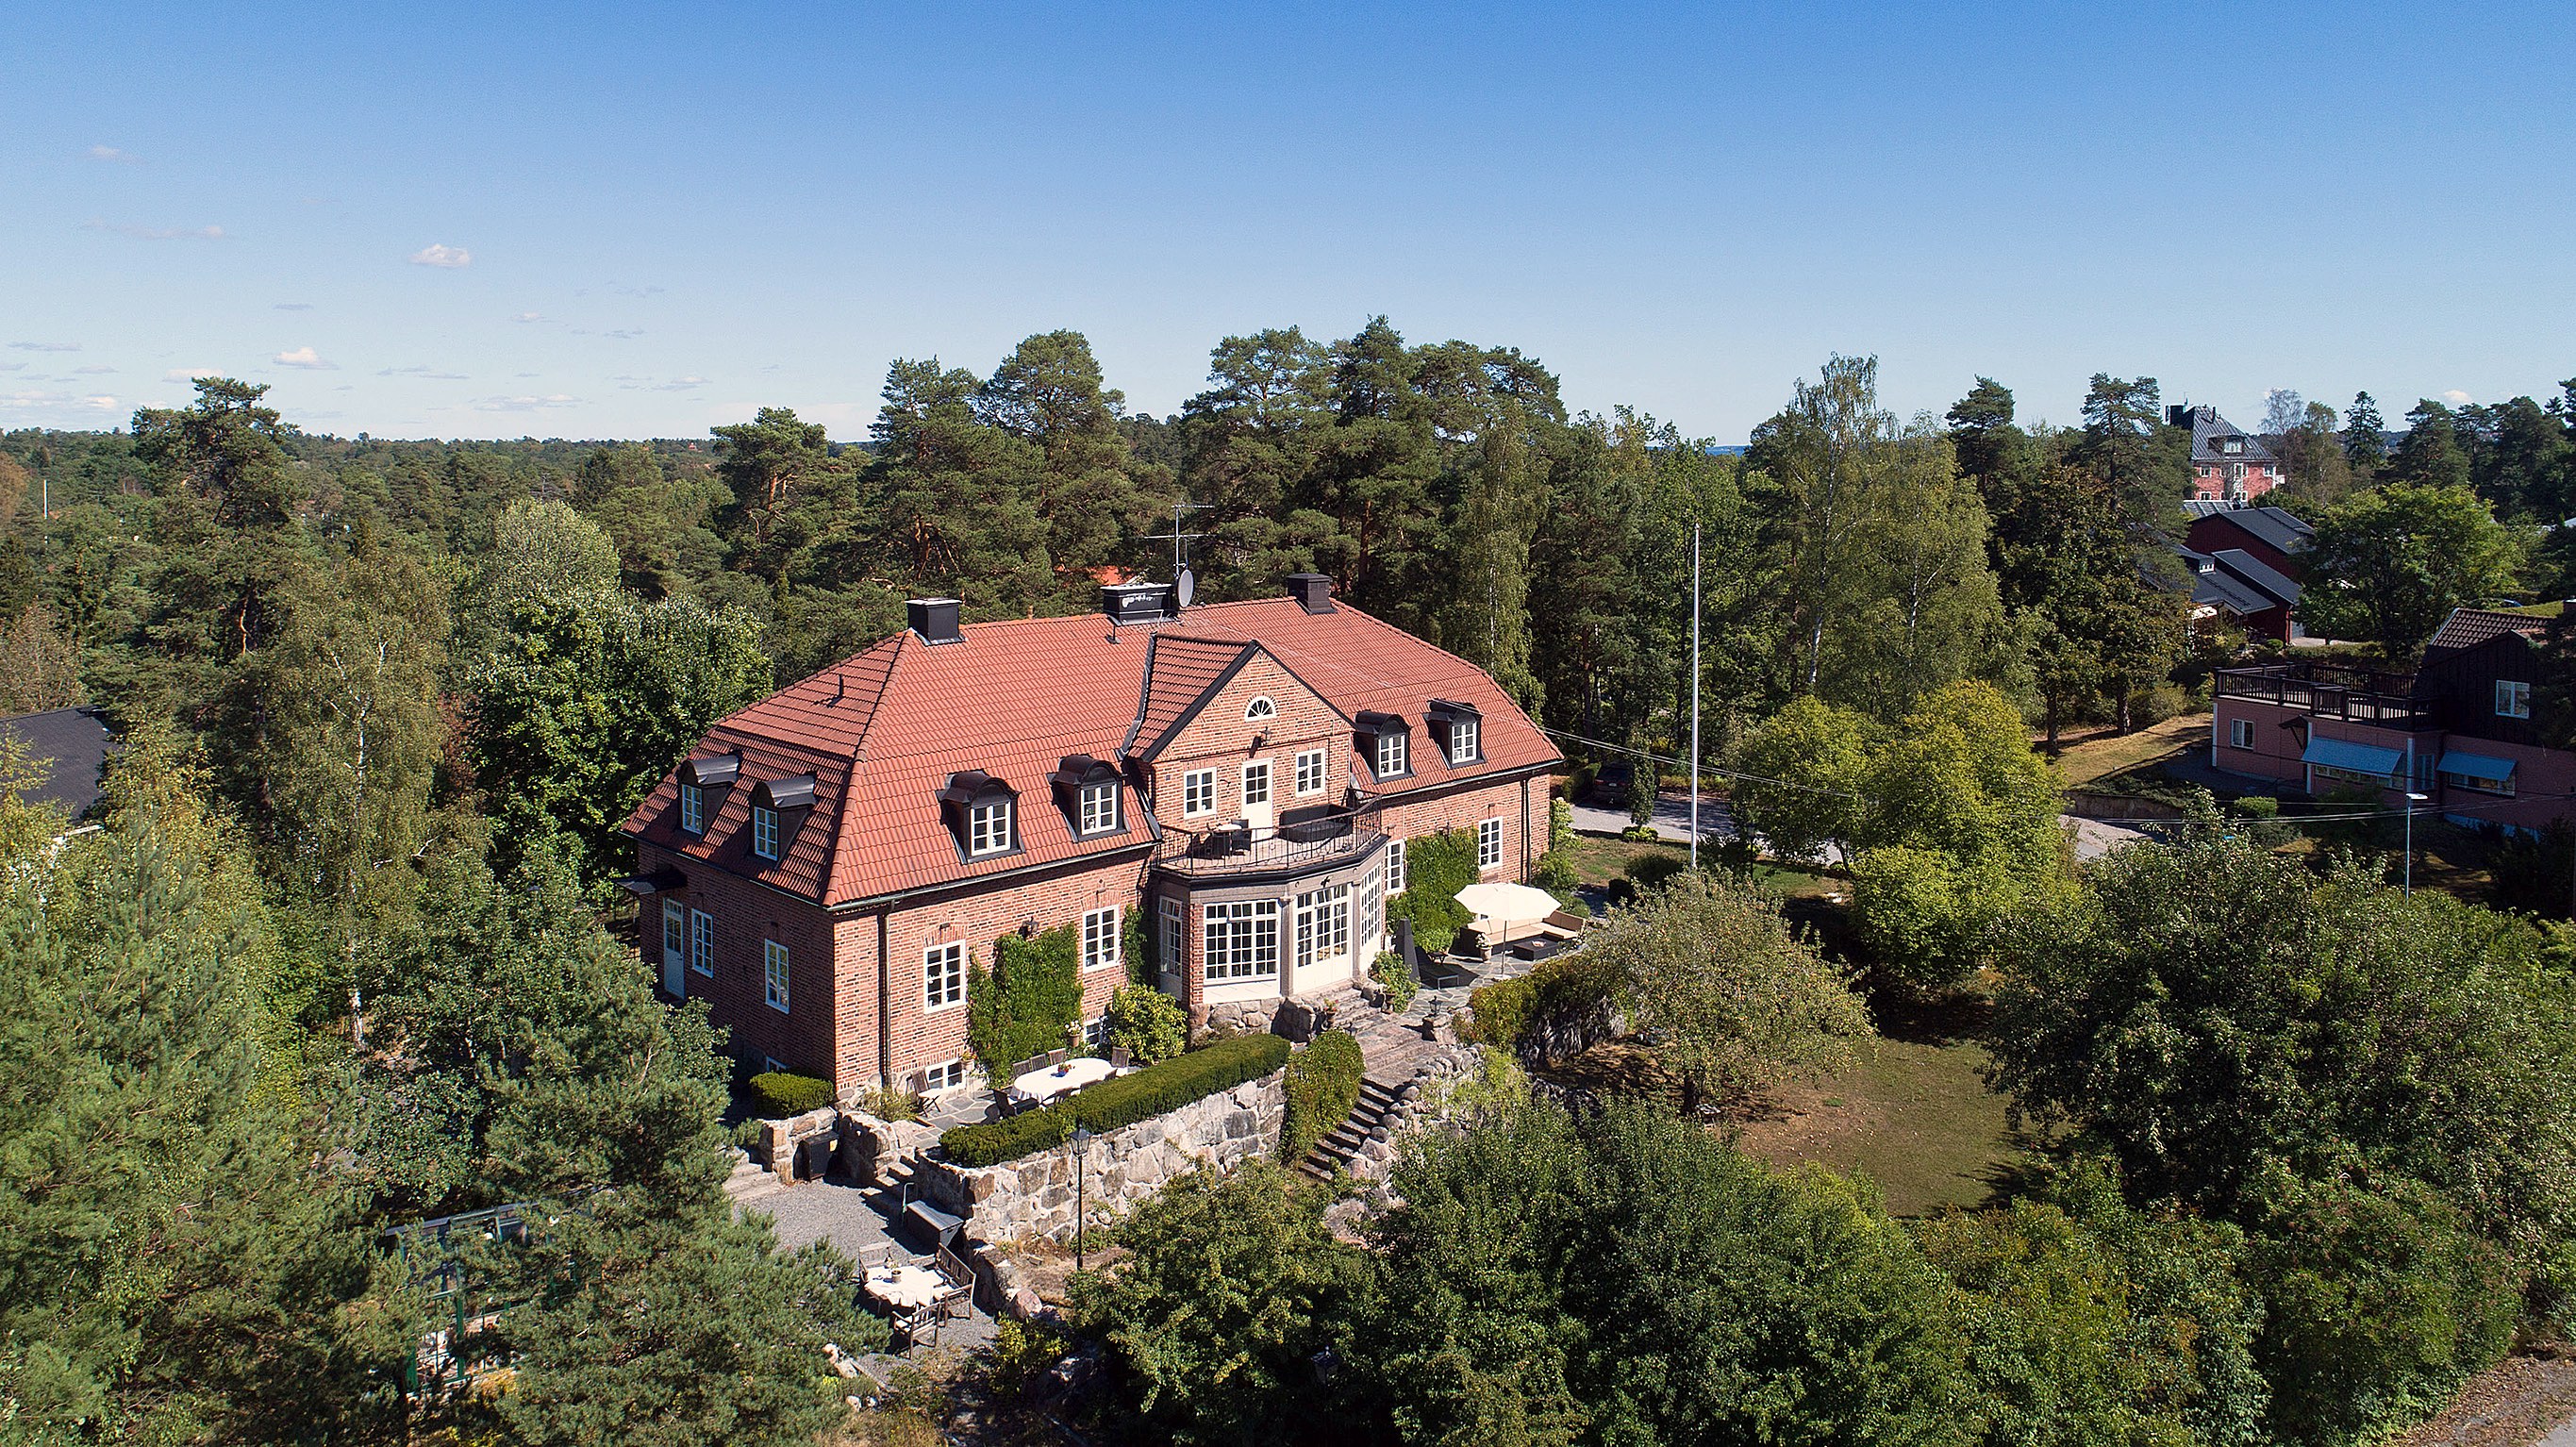 När du letar fastighetsmäklare i Stockholm kontakta Skeppsholmen Sotheby’s International Realty